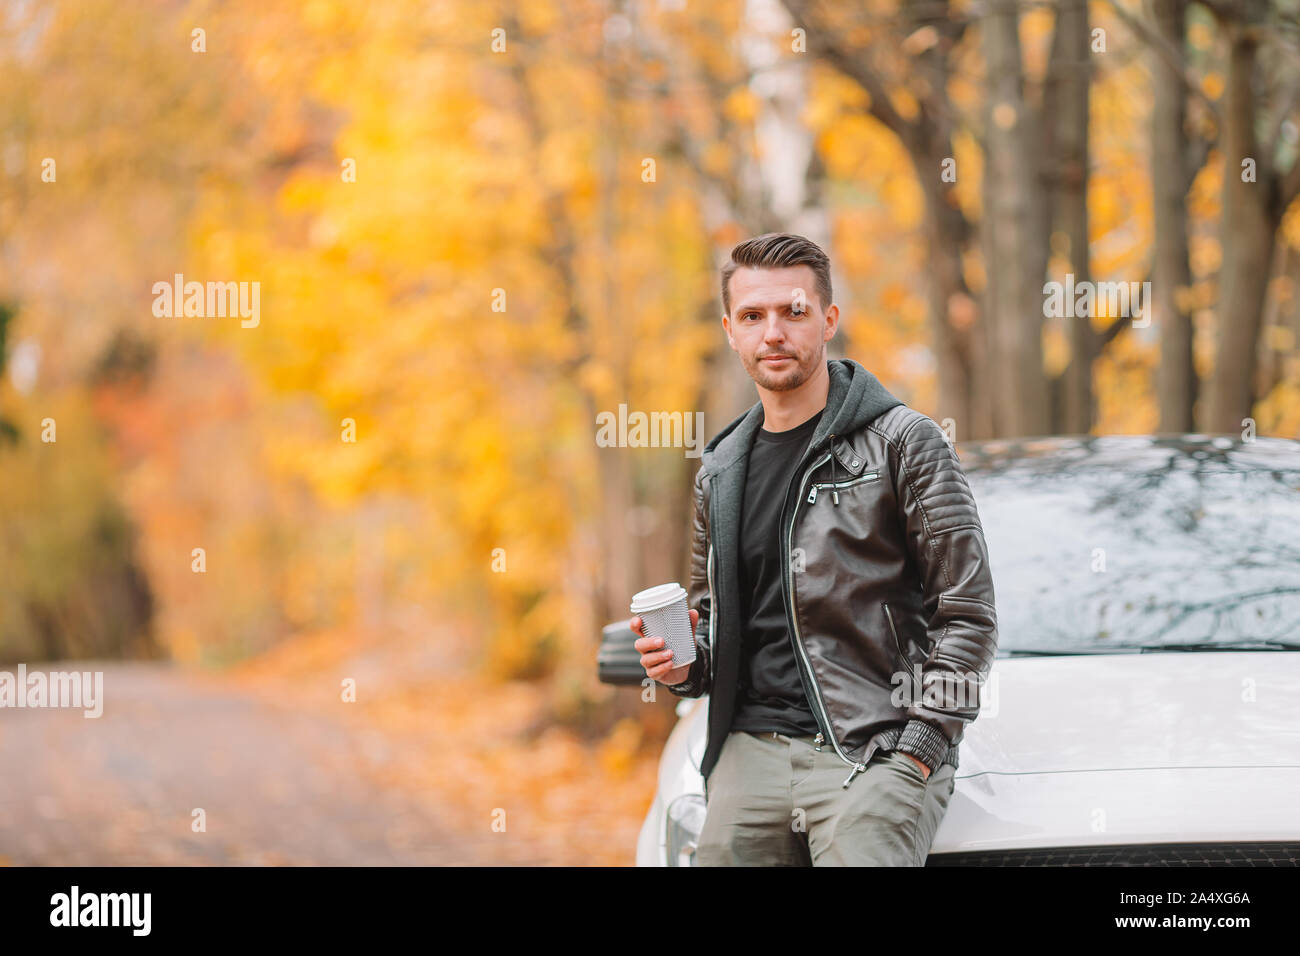 12 октября мужчина. Мужская фотосессия с машиной осенью. Фотосессии с машиной осень мужчина. Фотосессия мужская на улице осень с авто. Осень мужчина пьёт кофе.